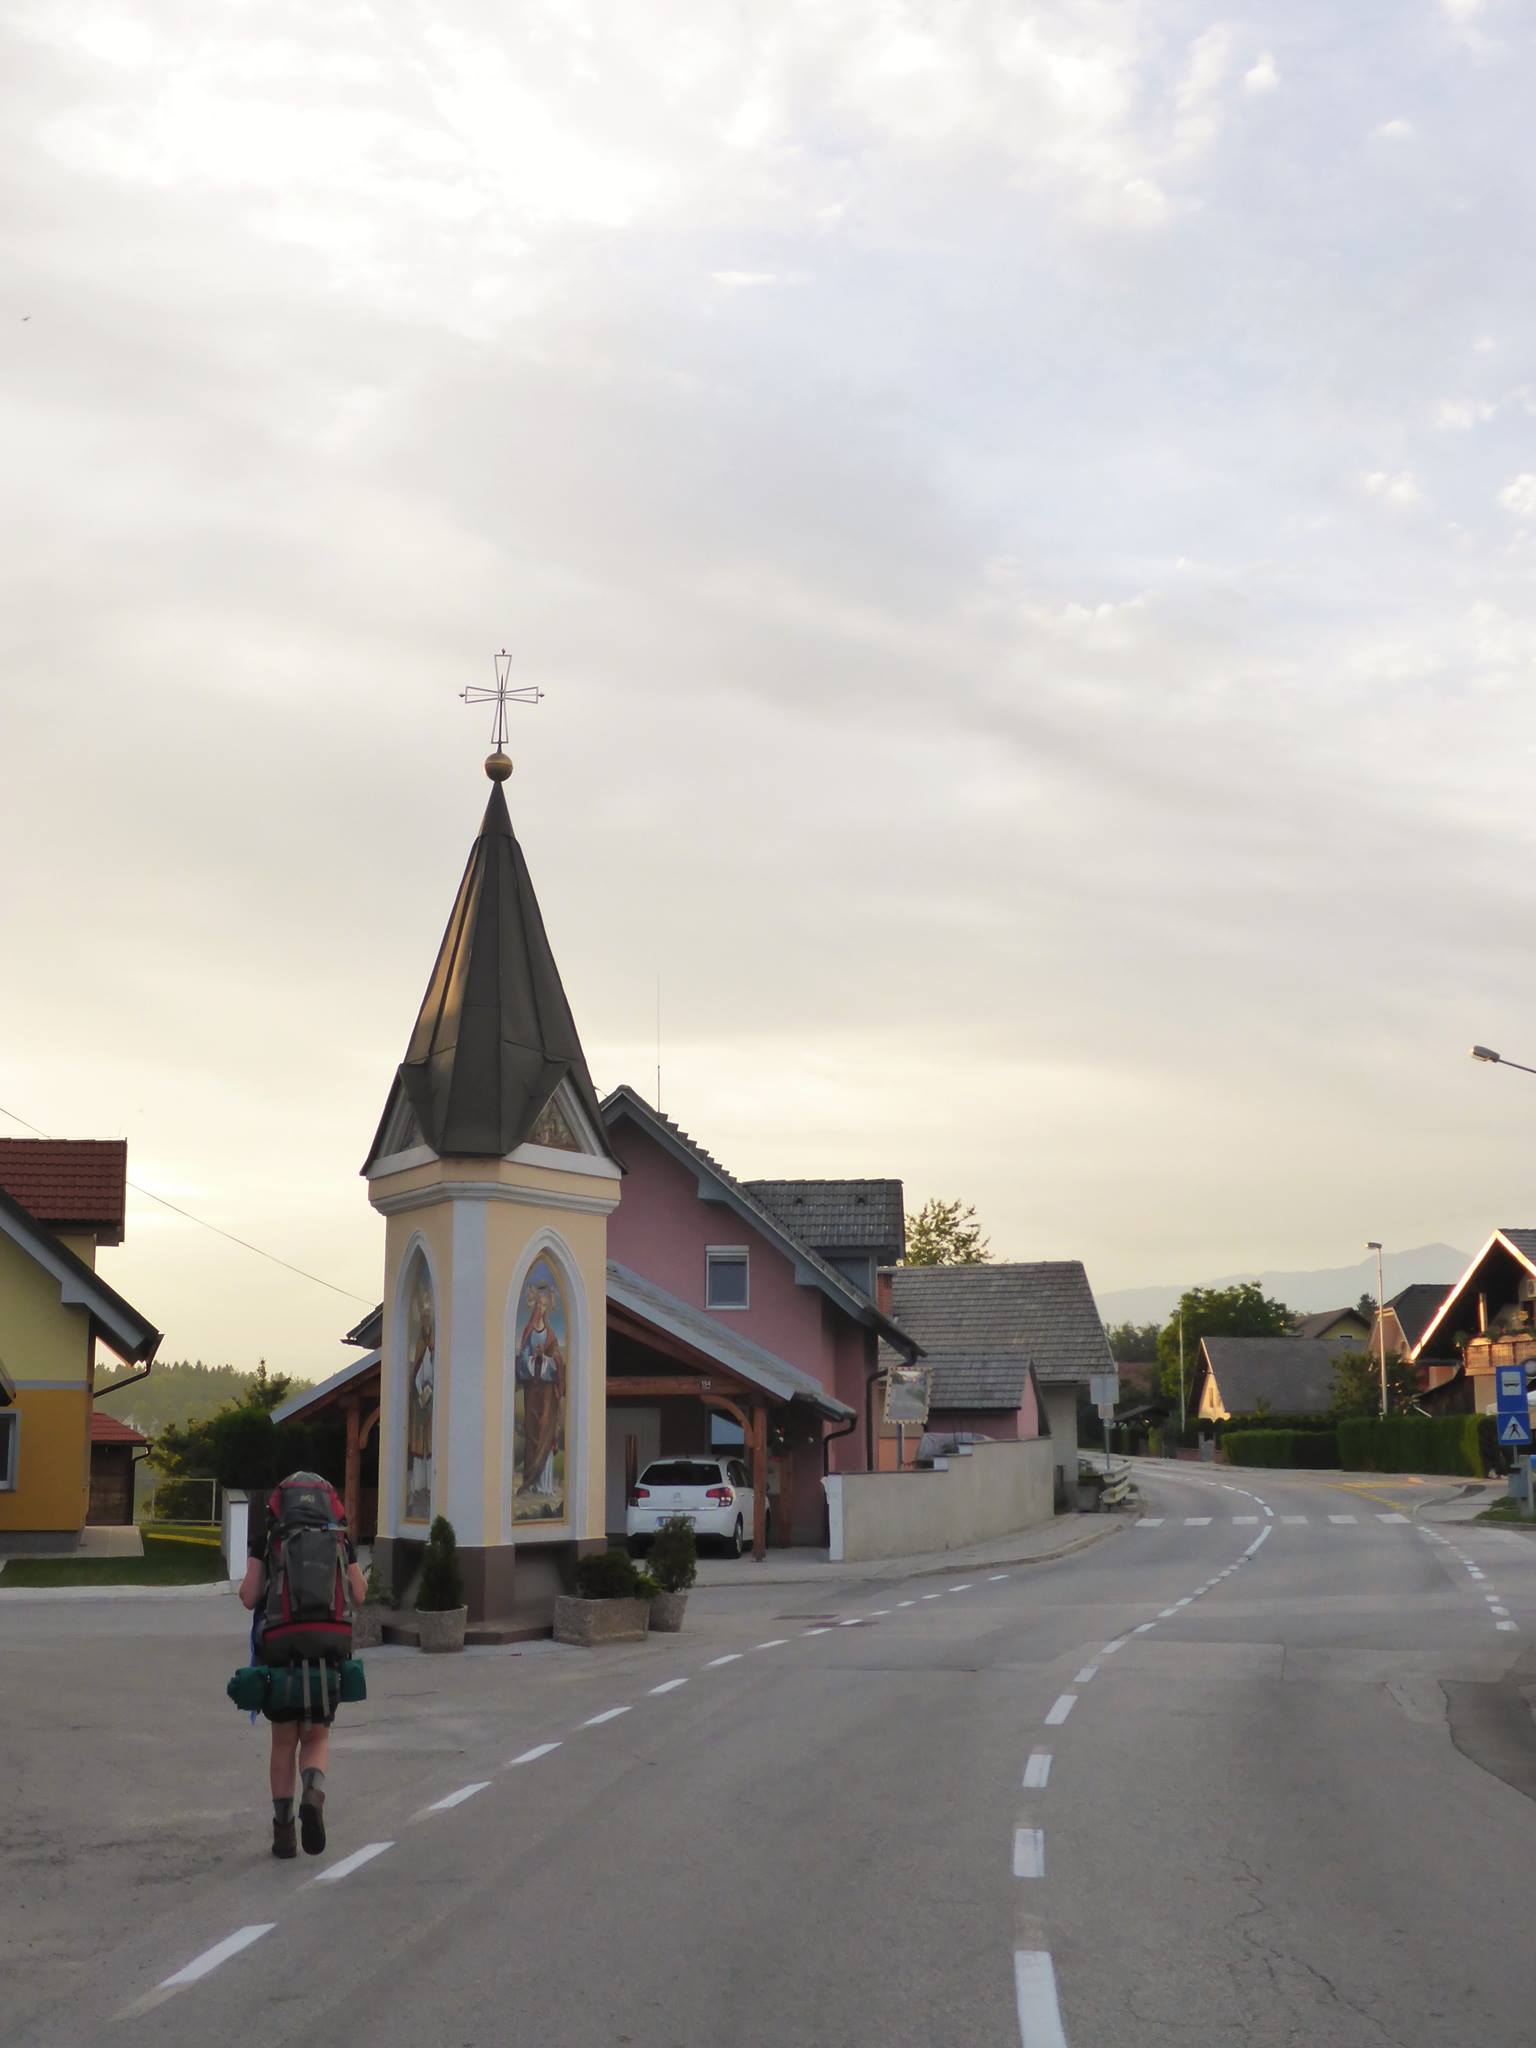 Nous prenons la direction de Bled, un village au pied des montagnes du Triglav